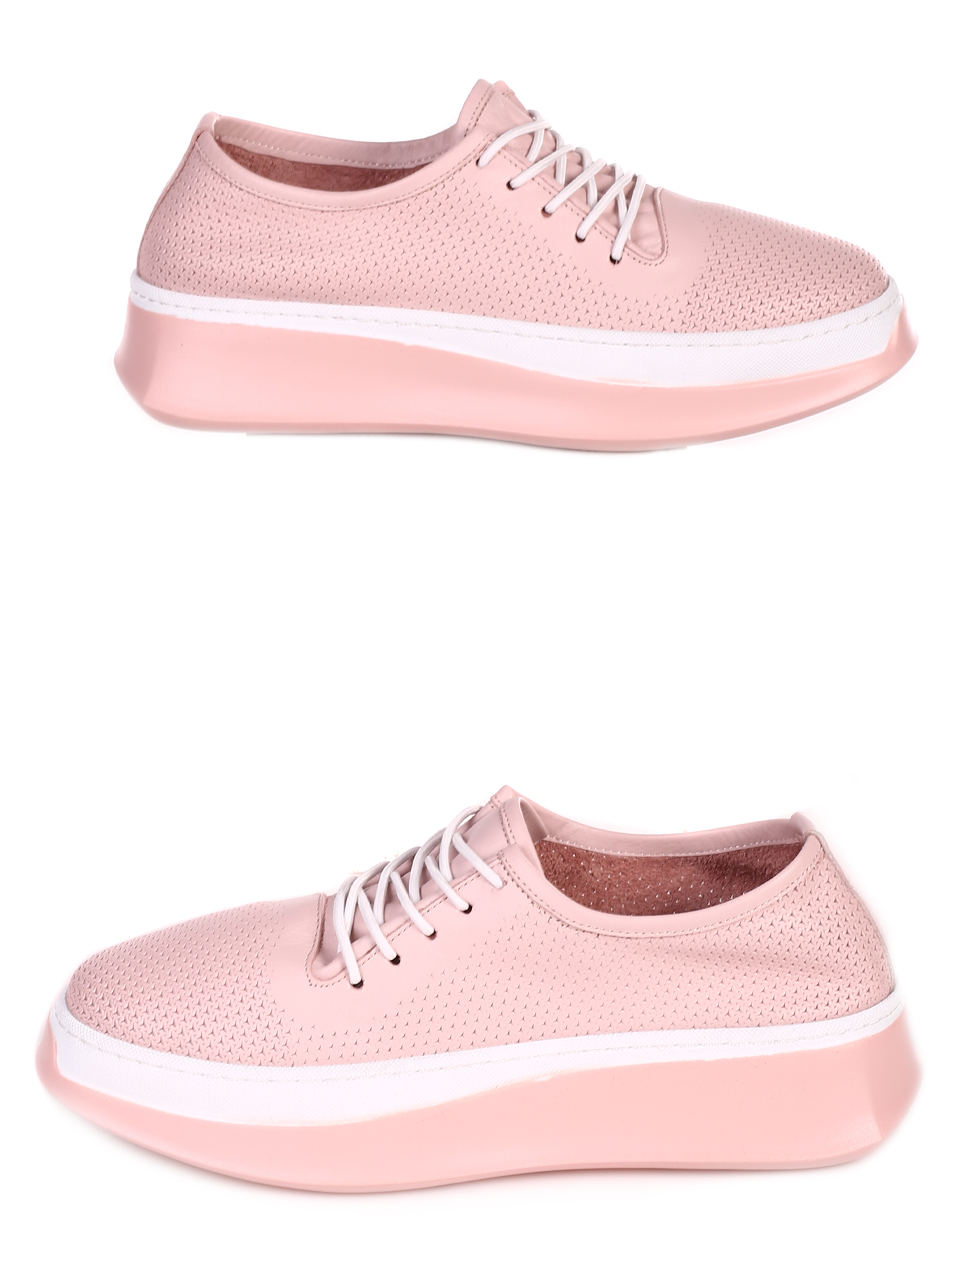 Ежедневни дамски комфортни обувки от естествена кожа 3AT-23282 pink